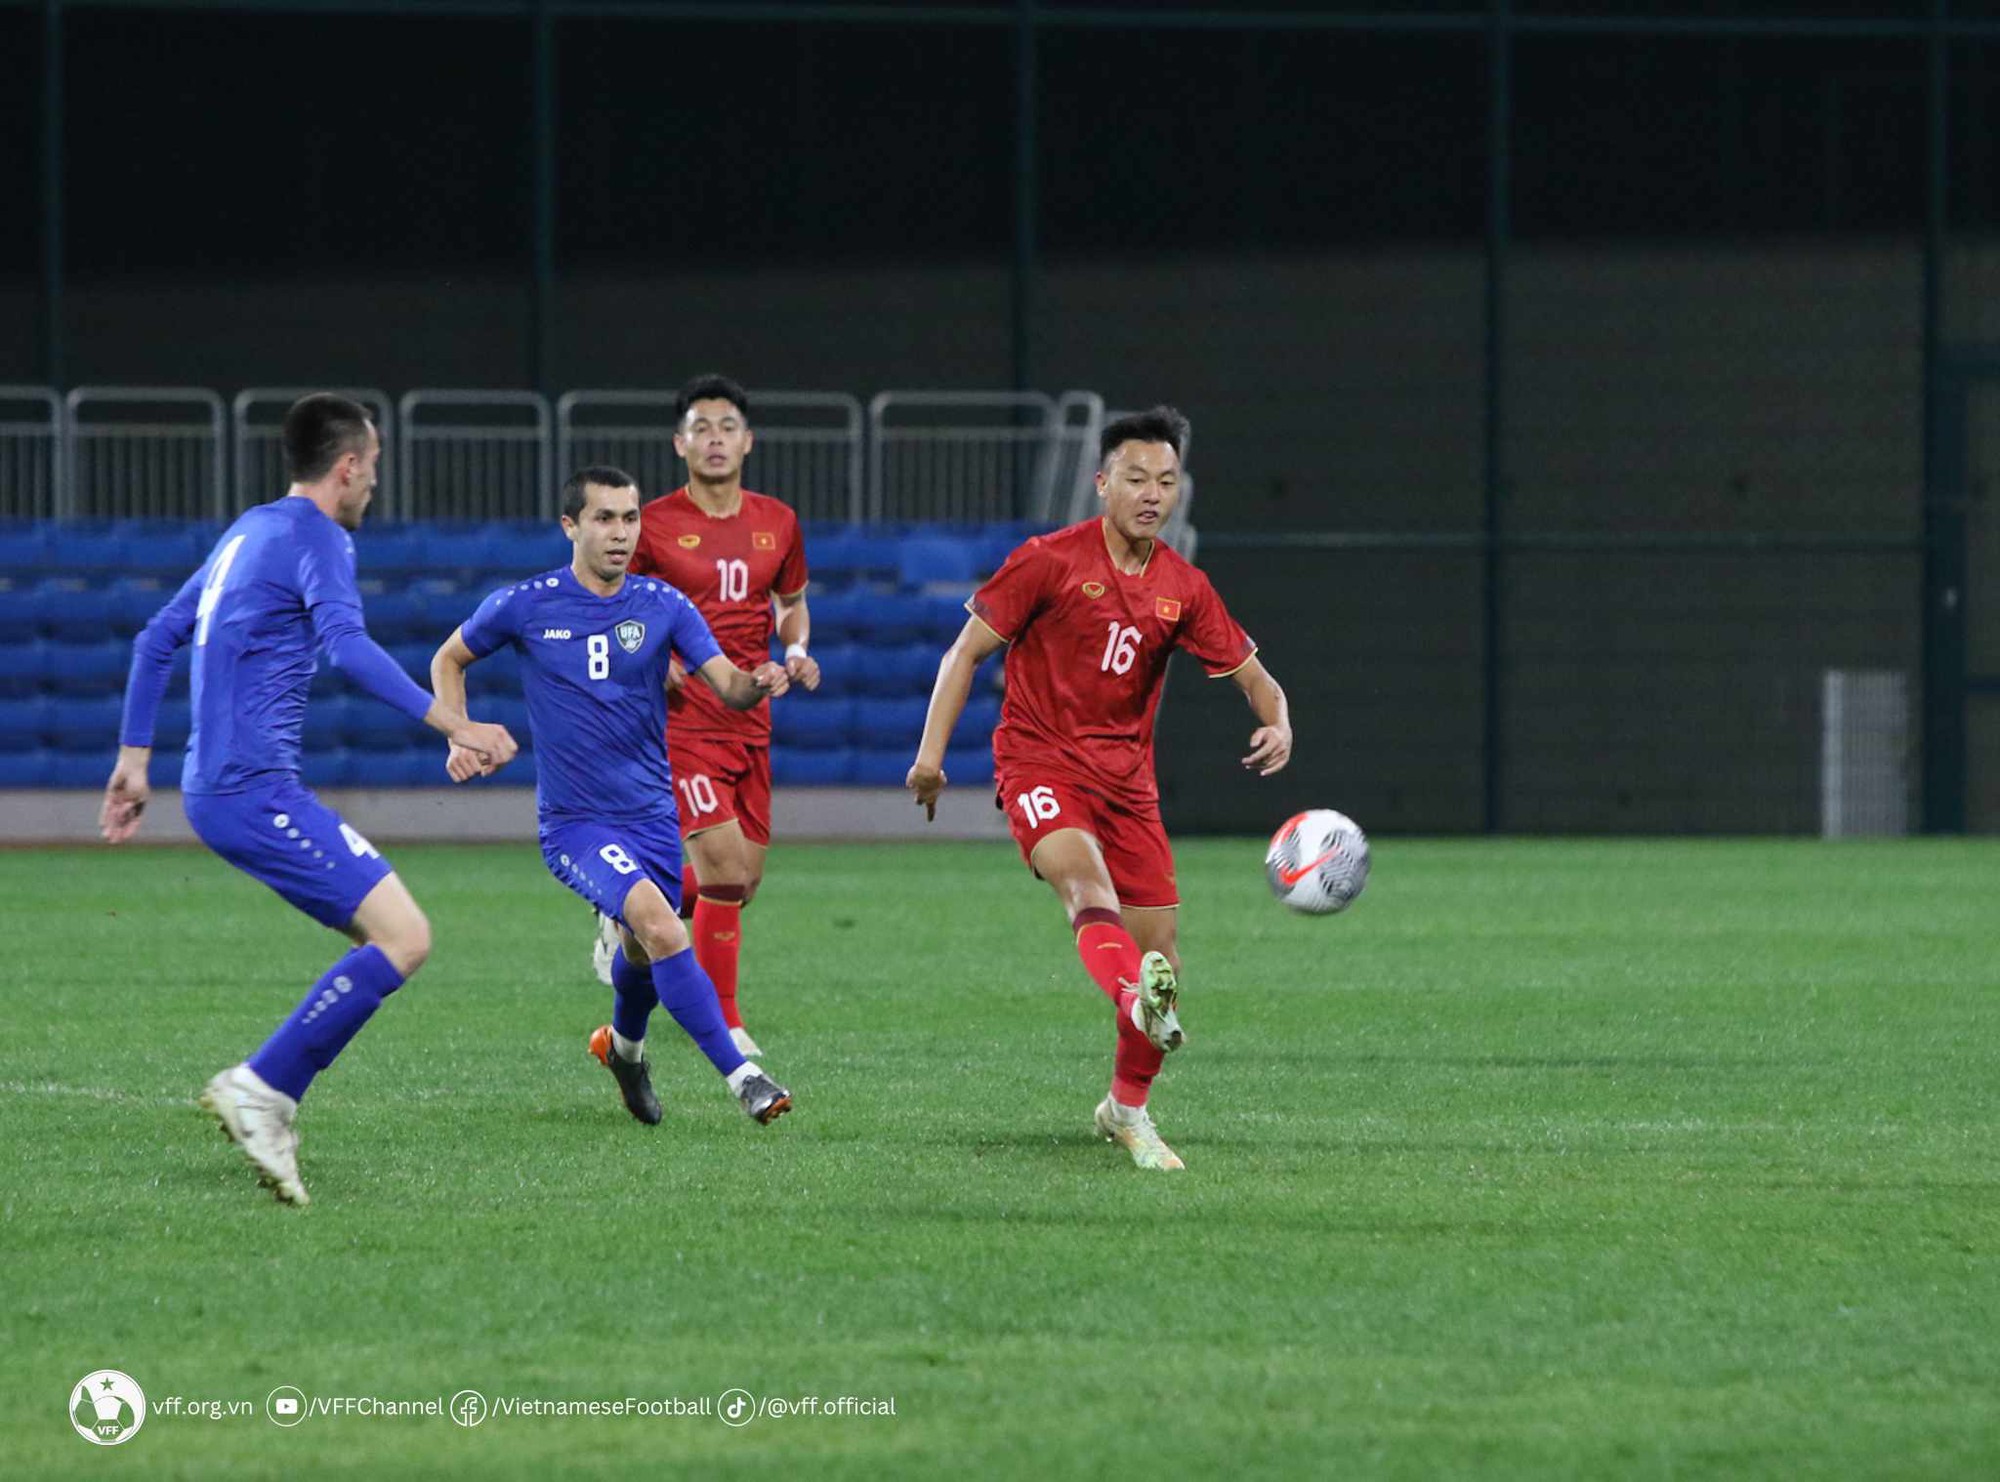 Thua liền hai trận, đội tuyển Việt Nam bất ngờ nhận tin vui từ FIFA  - Ảnh 1.